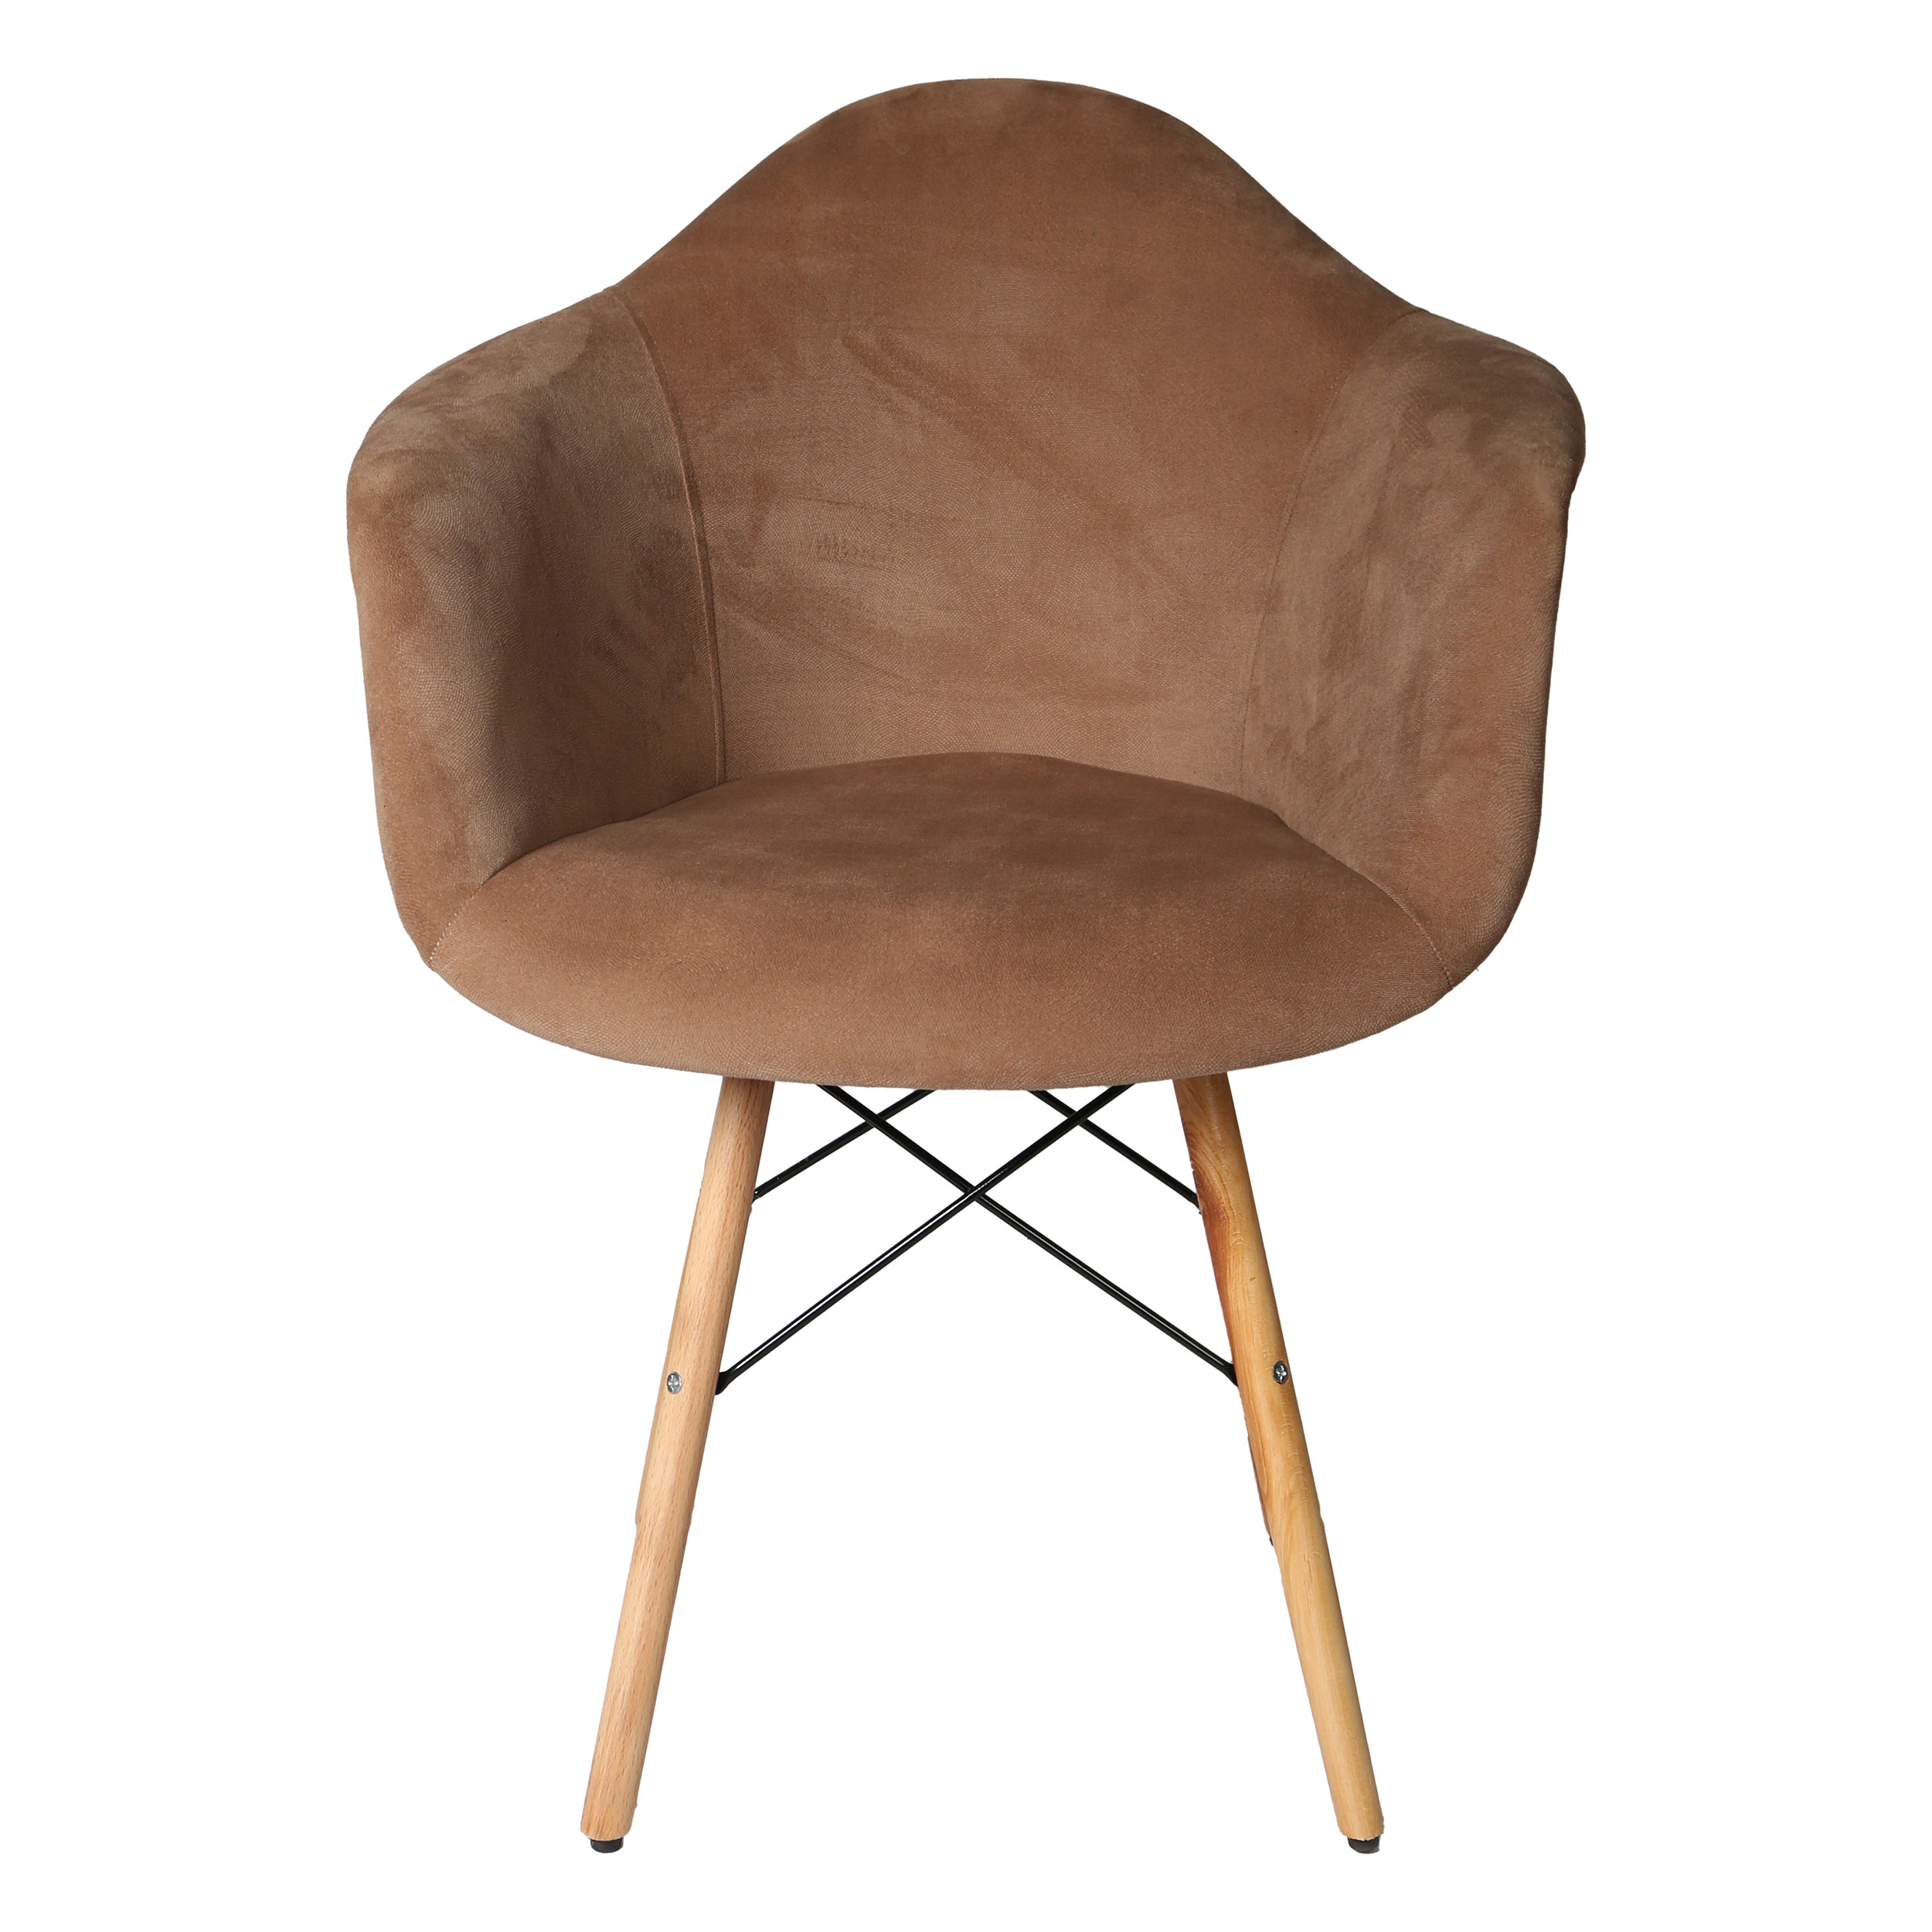 صندلی مدل ایزی پارچه ای پایه ایفلی چوبی